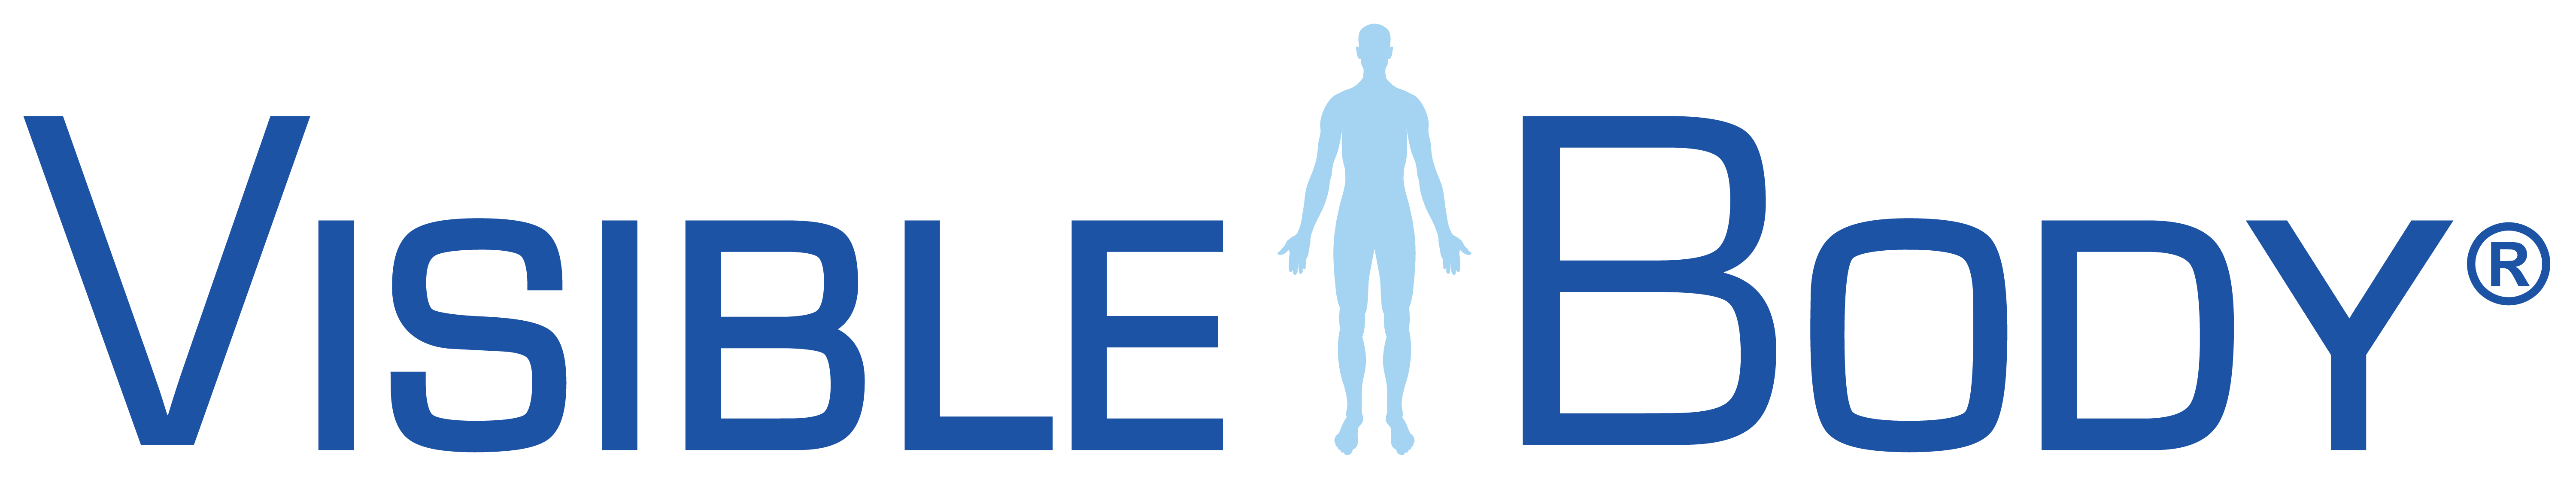 Visible Body Logo